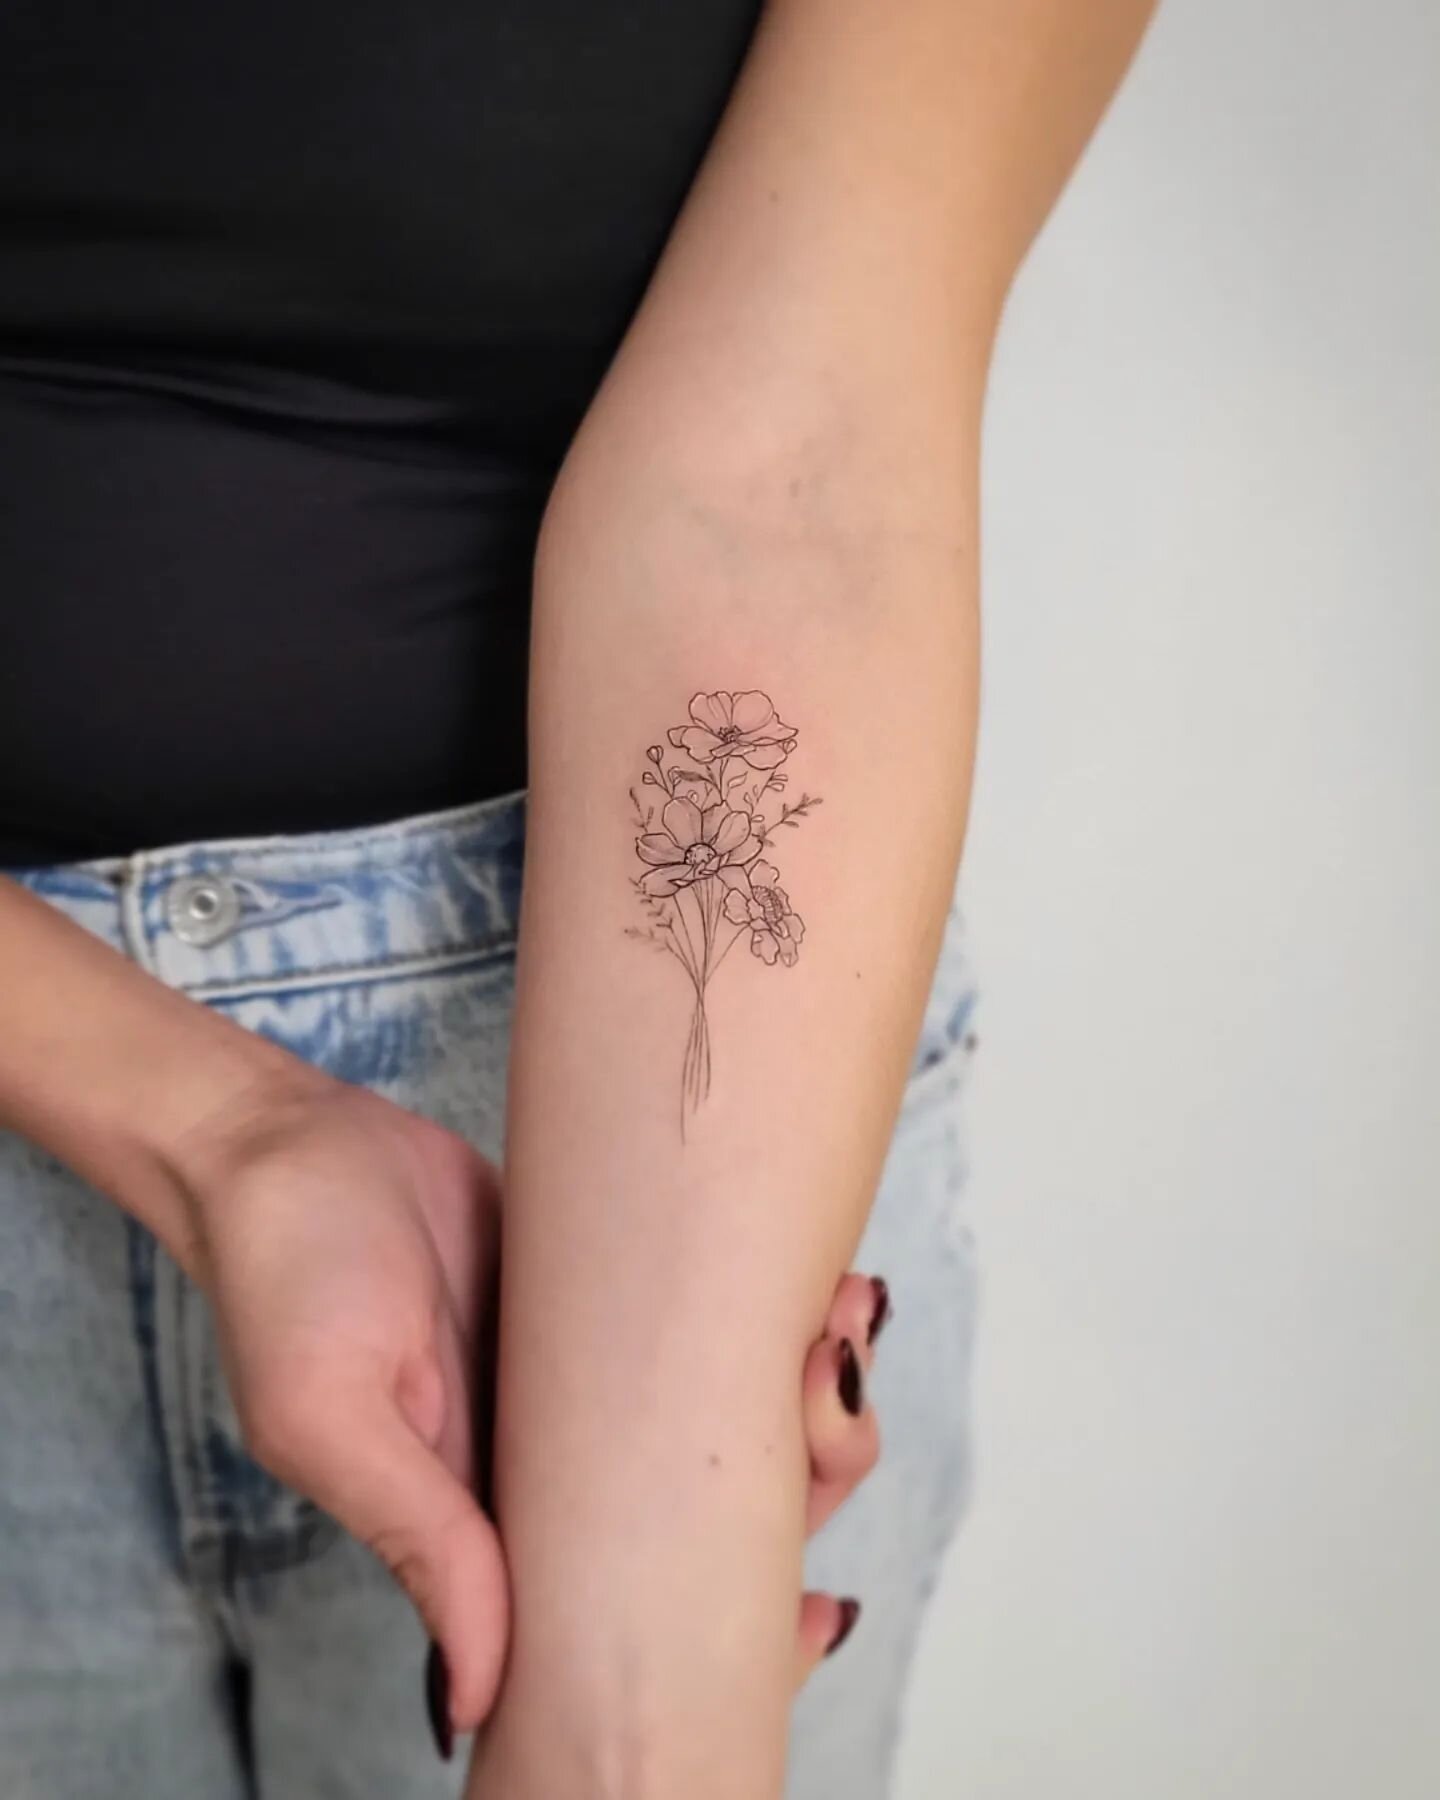 Floral bouquet *booking form in bio*
.
..
.
.
.
.
.
.
#tattoo #tattoos #ink #inked #art #tattooartist #tattooart #tattooed #tattoolife #tattooideas #love #artist #blackwork #instagood #tattoodesign #tatuagem #tattooing #tattooist #blackandgreytattoo 